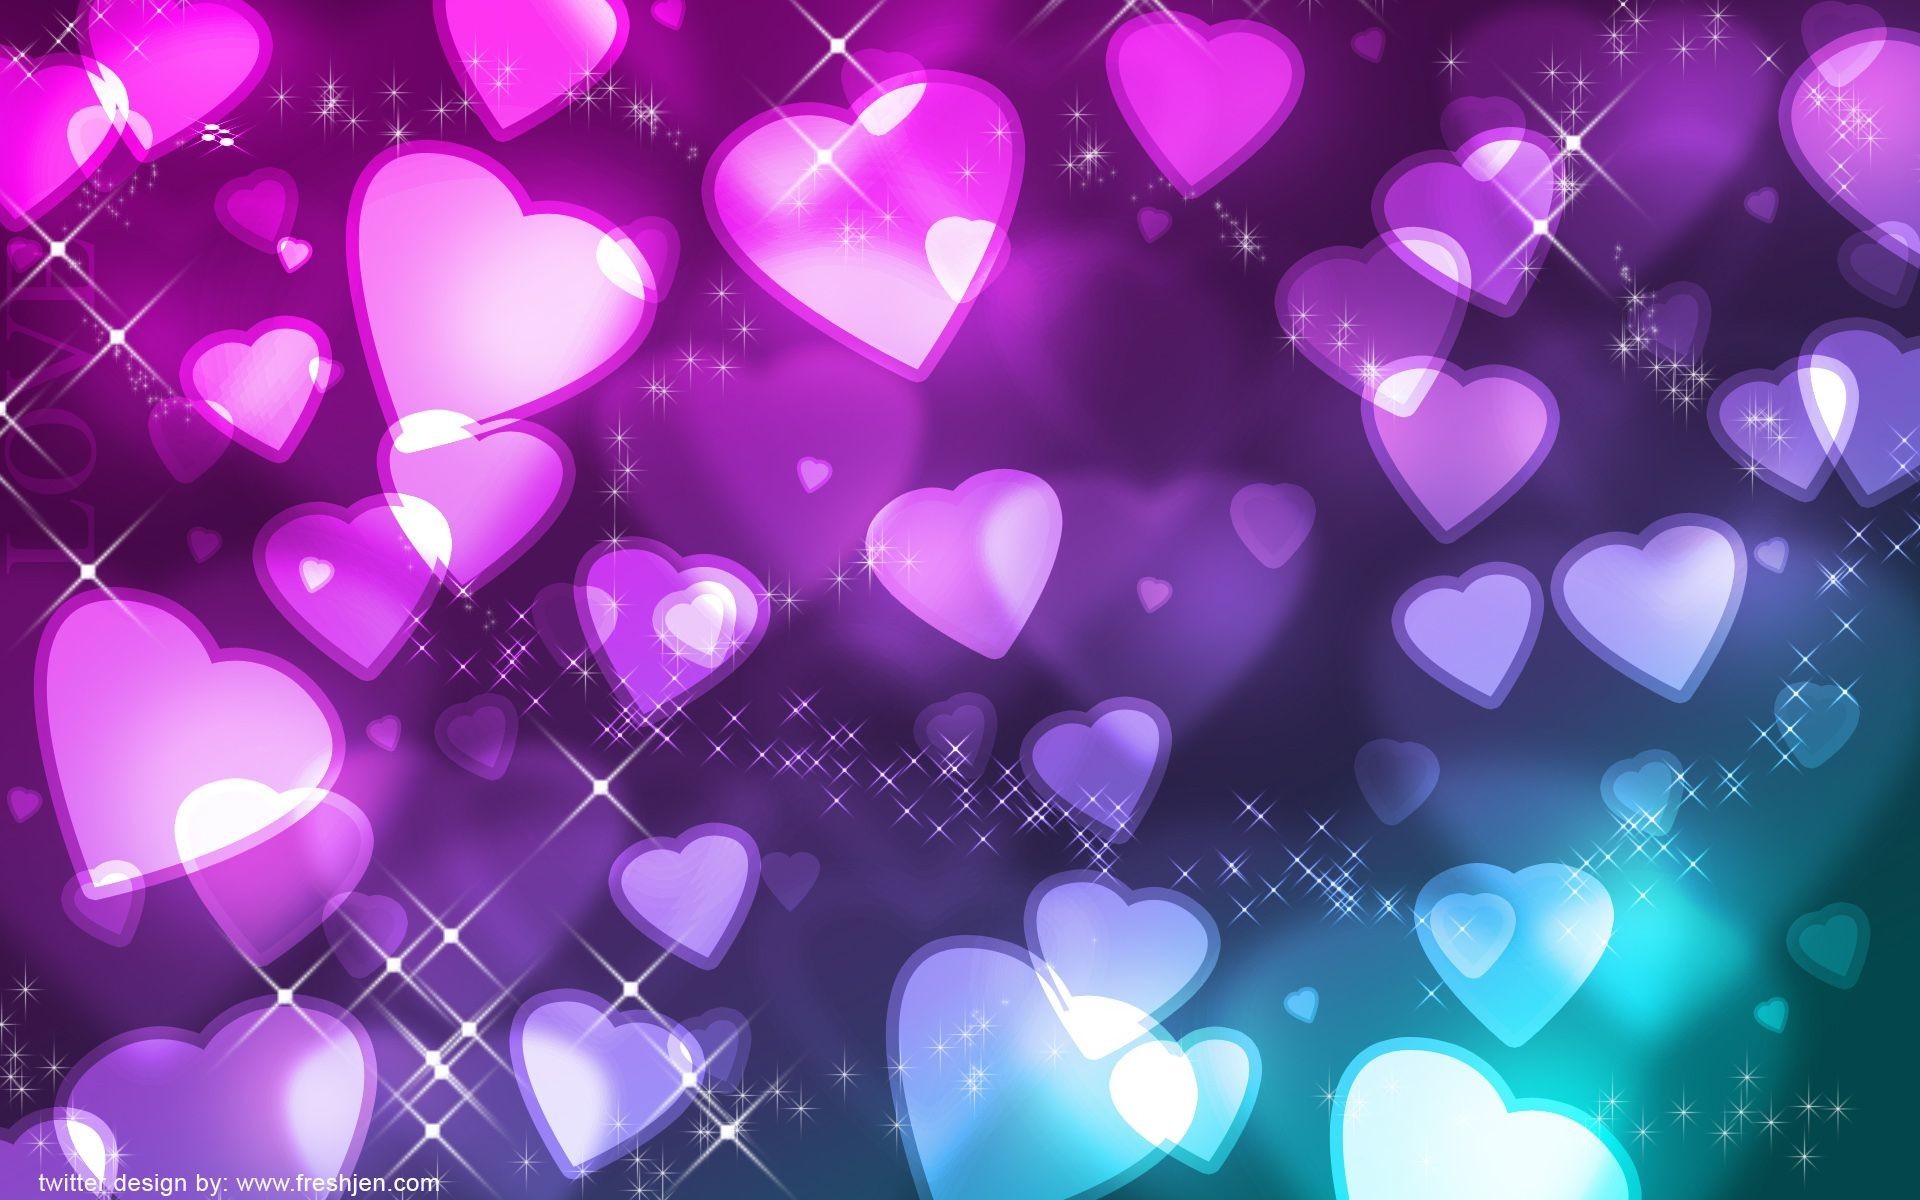 Vibrant Purple Hearts: Những trái tim tím đầy sắc màu đang đợi bạn khám phá. Tận hưởng màu tím tươi sáng và những trái tim đầy năng lượng trong bức ảnh này. Qua những hình ảnh đầy đam mê, bạn có thể truyền tải thông điệp yêu thương dành cho người mình thương.